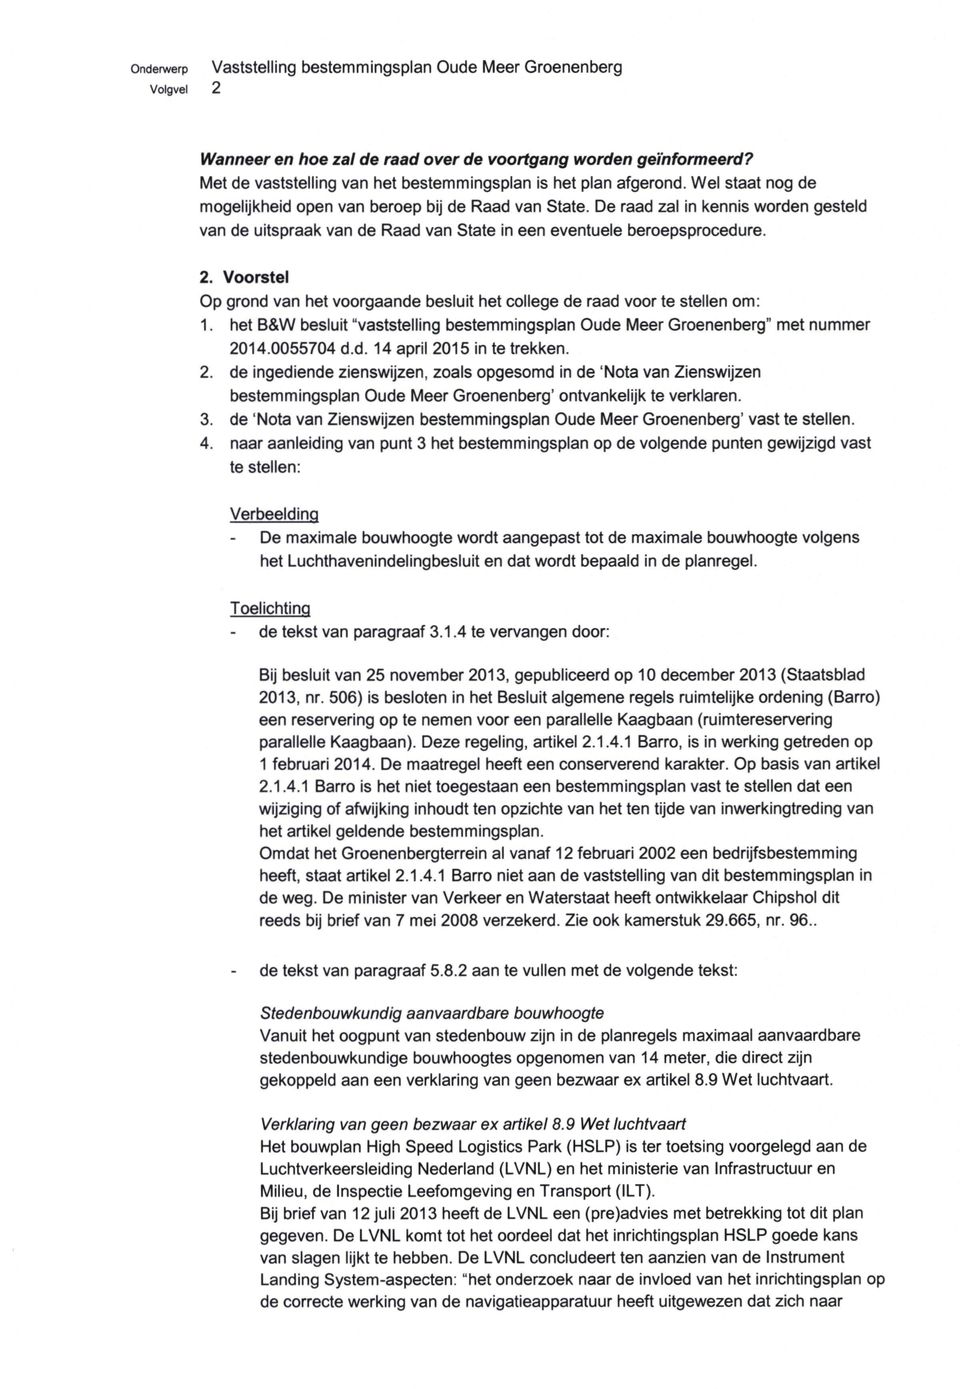 Voorstel Op grond van het voorgaande besluit het college de raad voor te stellen om: 1. het B&W besluit "vaststelling bestemmingsplan Oude Meer Groenenberg" met nummer 2014.0055704 d.d. 14 april 2015 in te trekken.